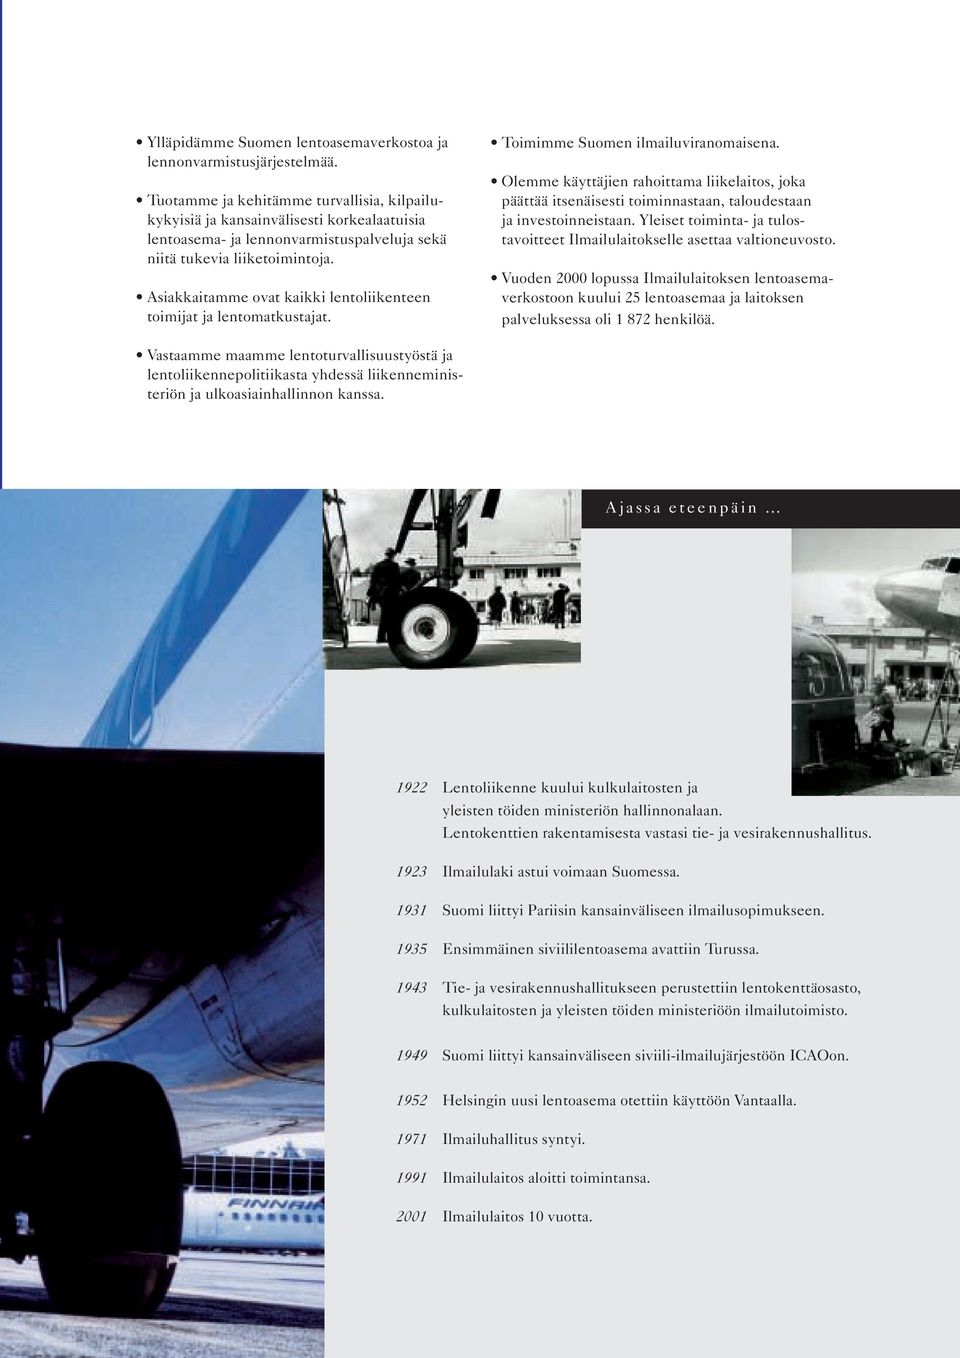 Asiakkaitamme ovat kaikki lentoliikenteen toimijat ja lentomatkustajat. Toimimme Suomen ilmailuviranomaisena.